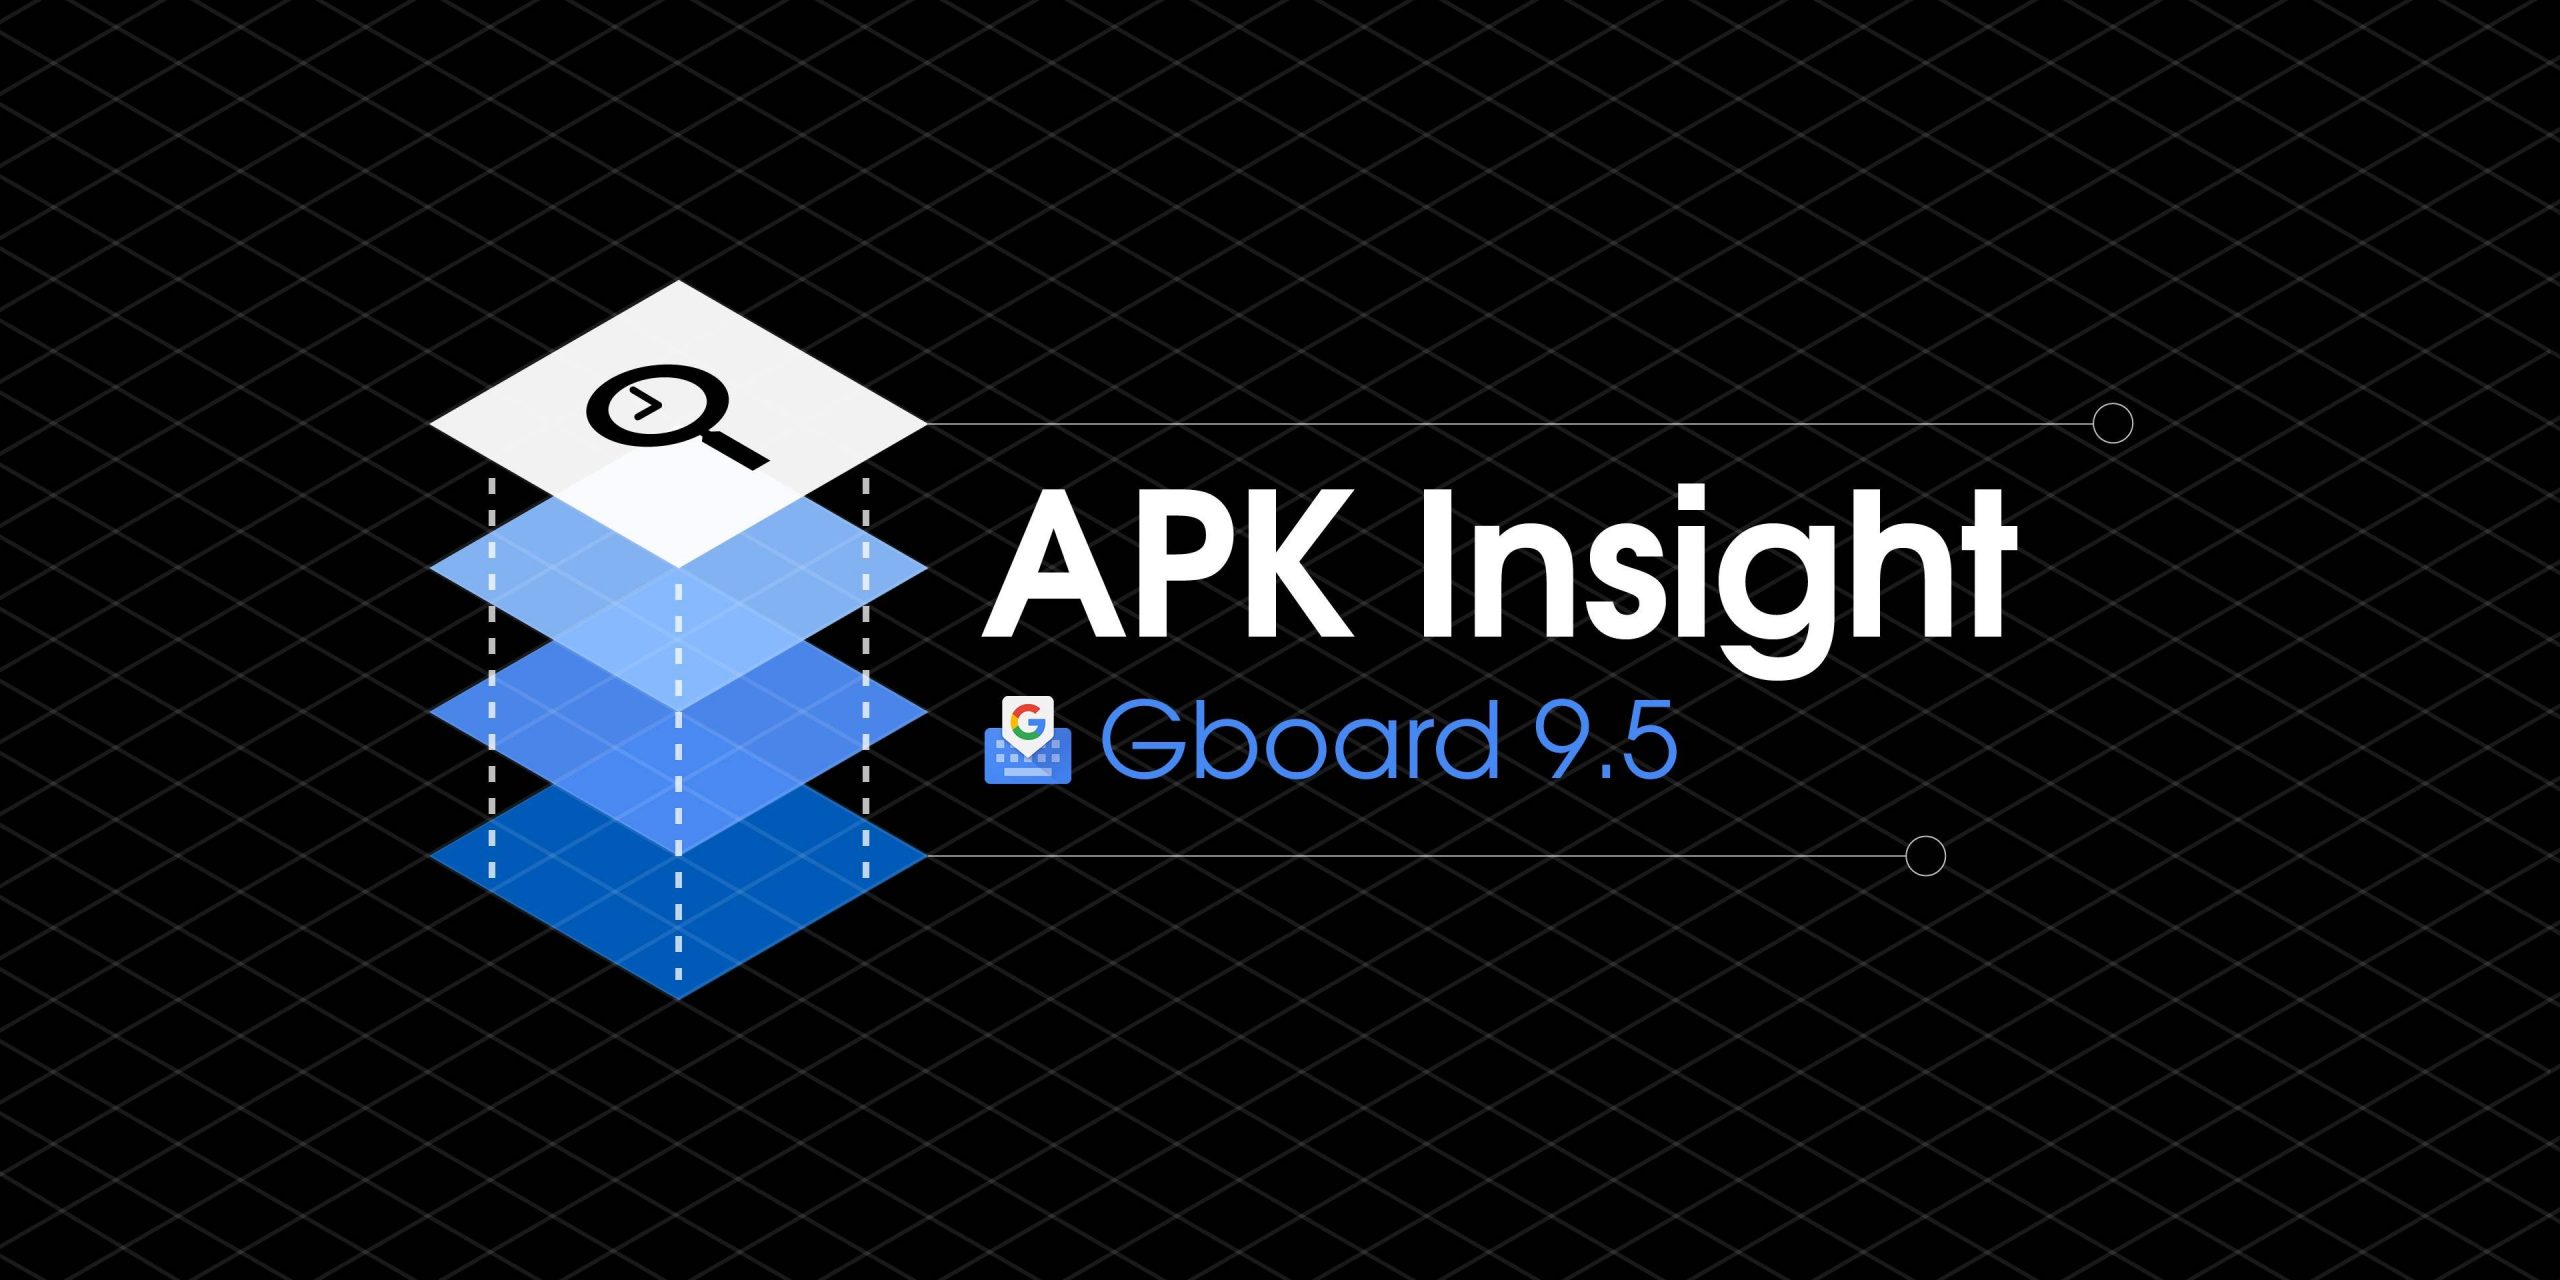 Gboard 9.5 dicas para remover adesivos 'Mini', mais sugestões de emoji [APK Insight]